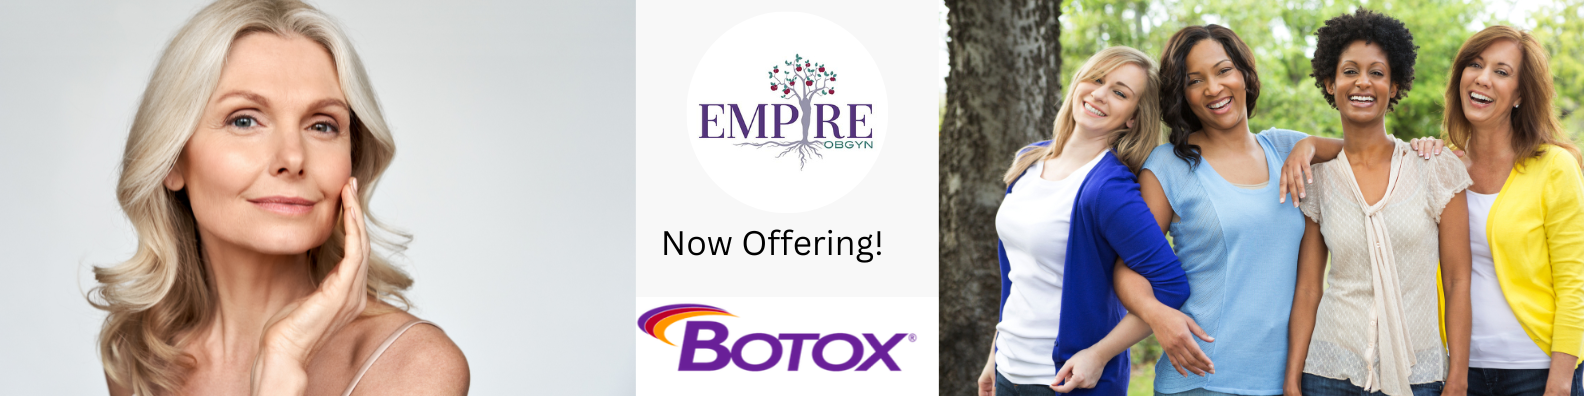 Botox Provider Buffalo NY